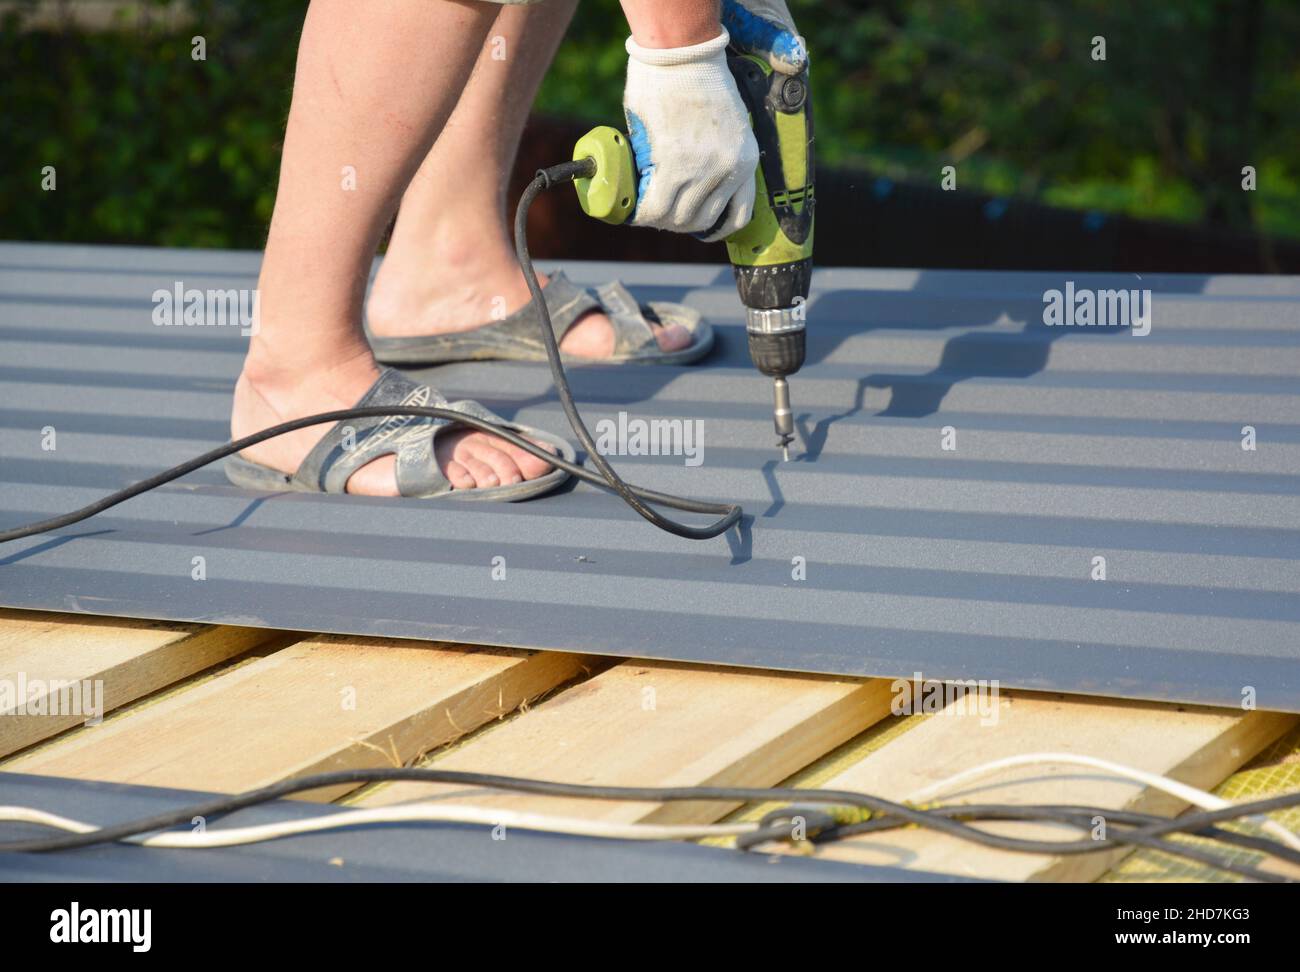 Dachkonstruktion aus Metall. Ein Bauunternehmer installiert Wellblech-Dachbleche auf den Dachsparren und verschraubt Metallpaneele mit Stockfoto